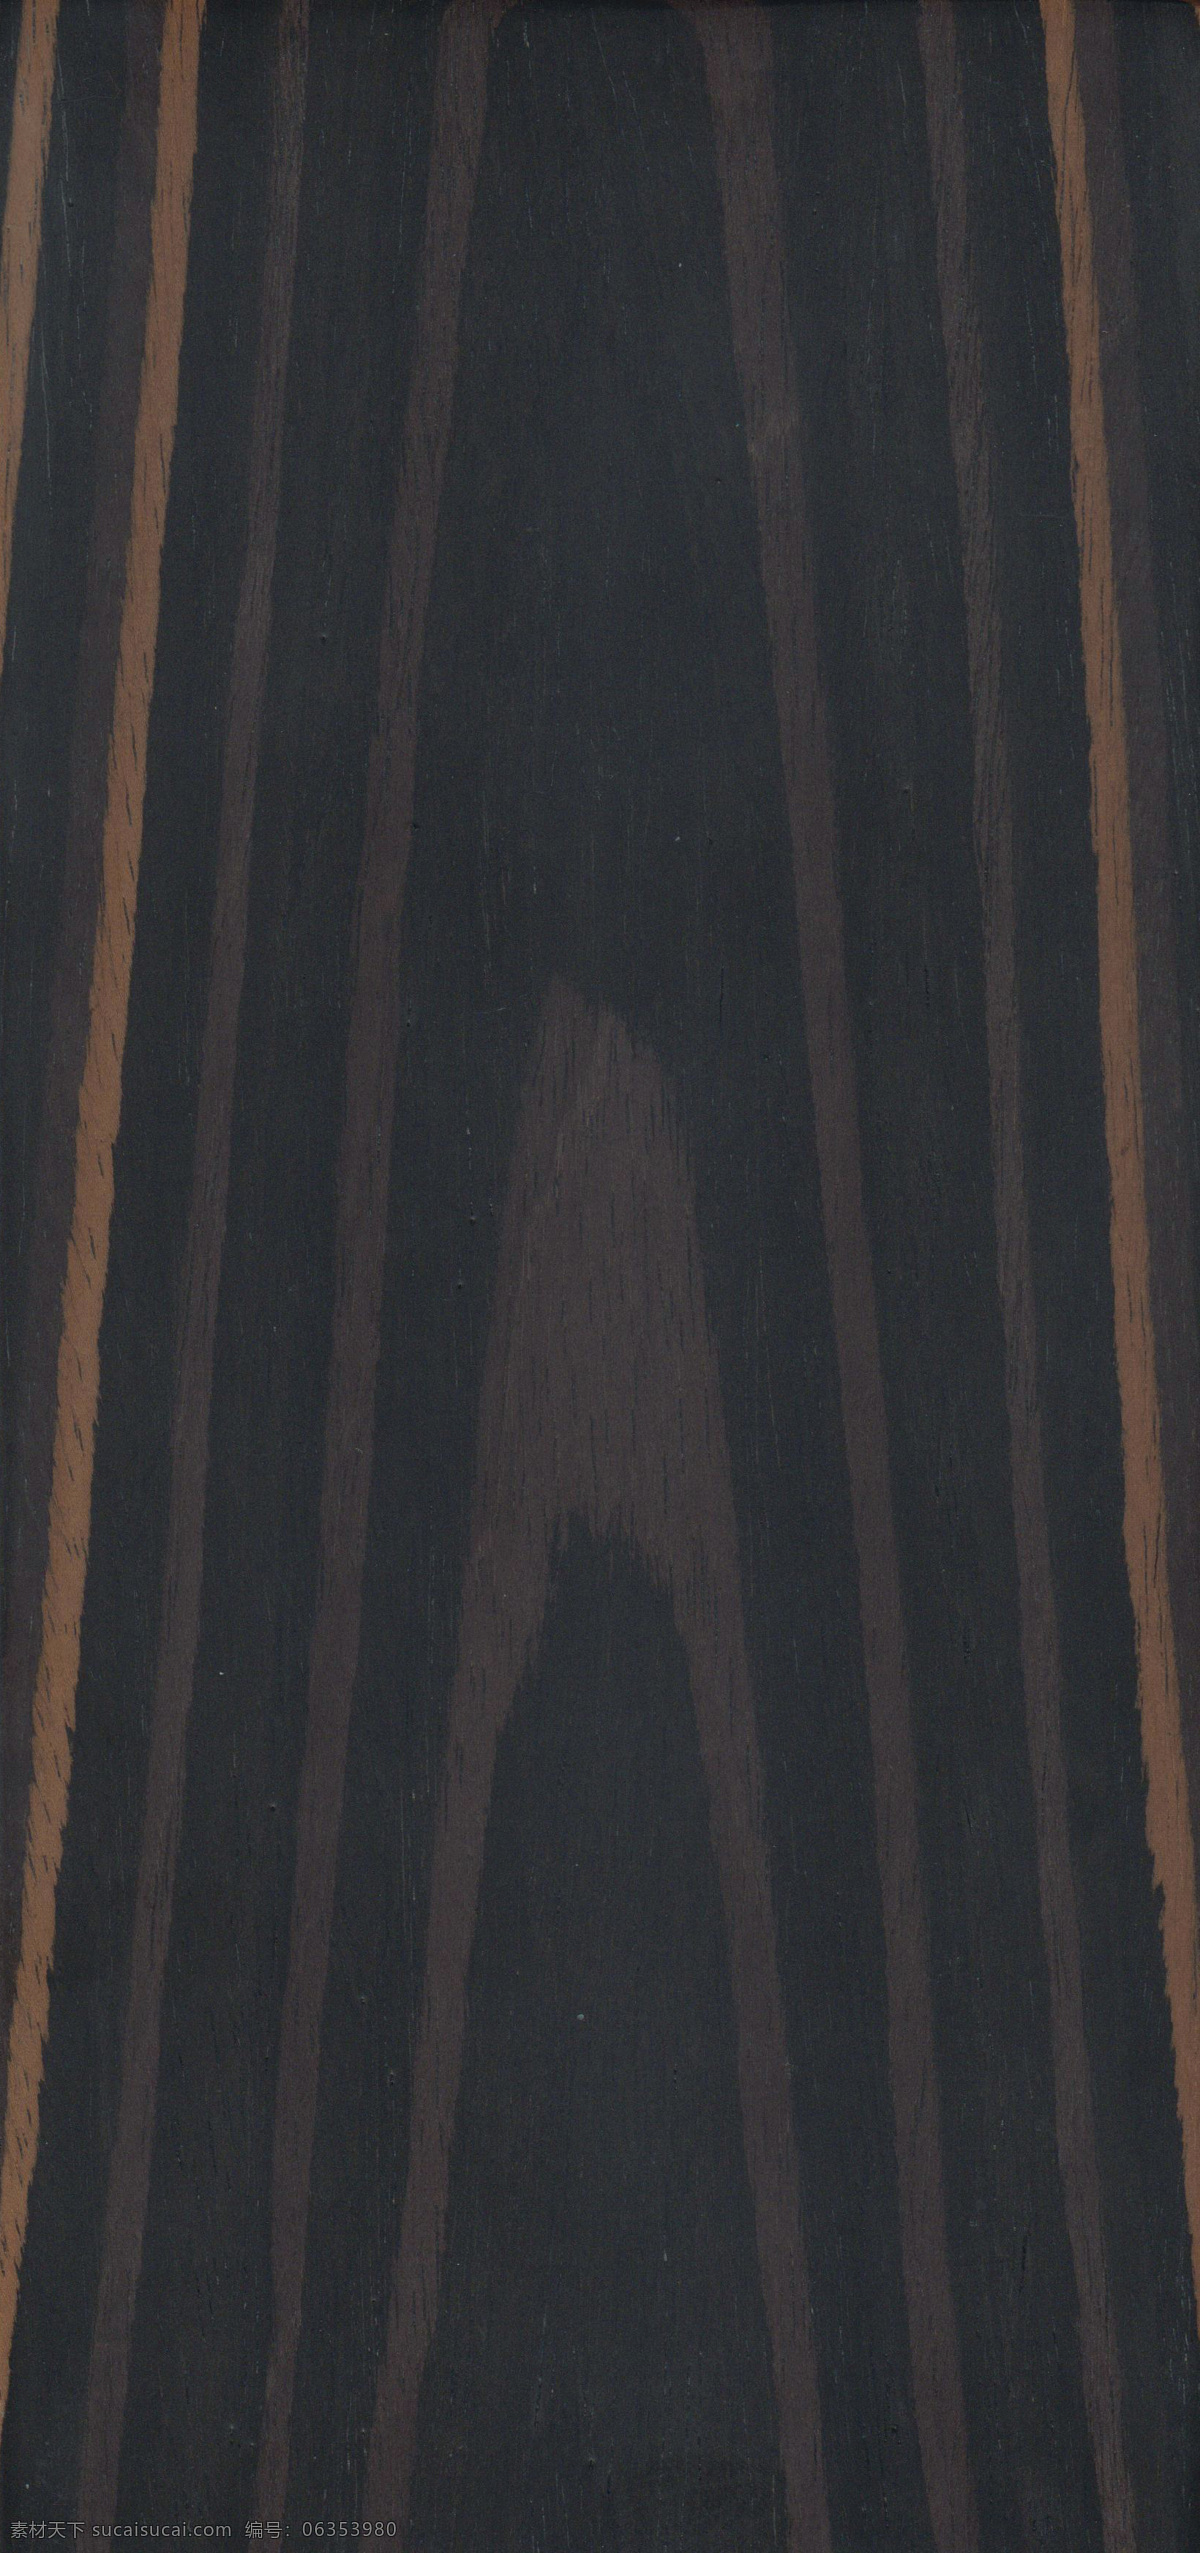 黑檀木 木纹 木纹贴图 贴图 3d贴图 木料 木材 木材贴图 材质贴图 模型贴图 木质 地板 地板贴图 素材贴图 纹理贴图 木板 木饰面 生活百科 生活素材